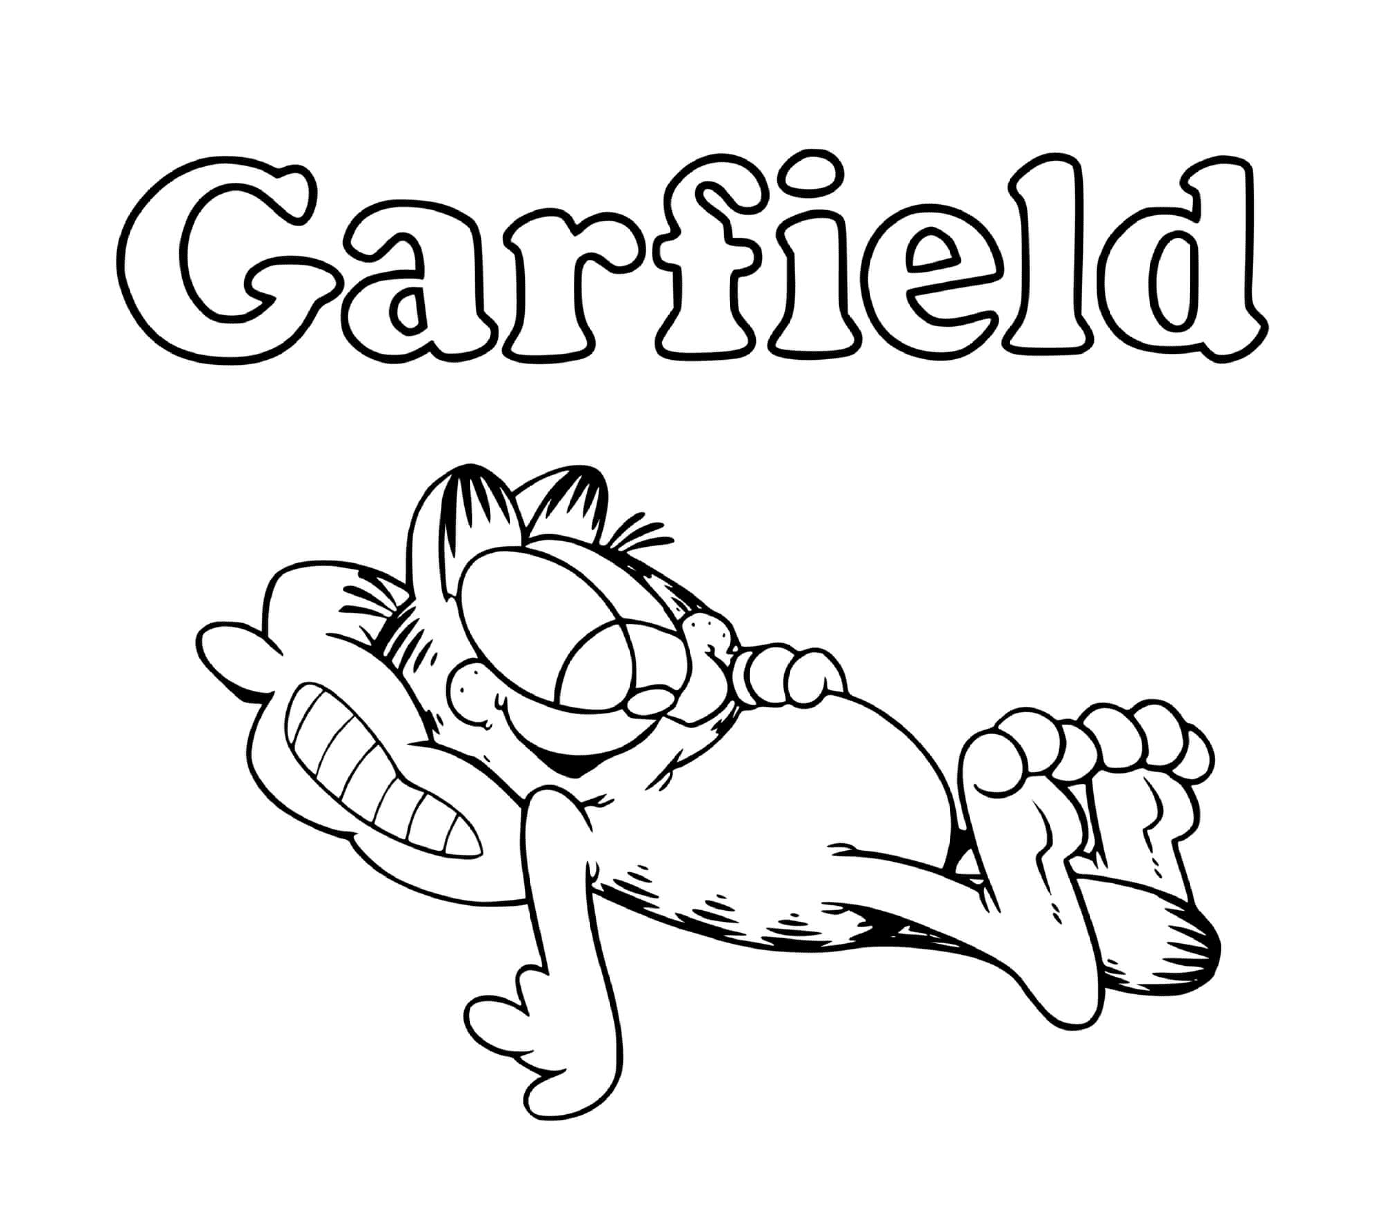  Garfield mag es zu essen und zu schlafen 